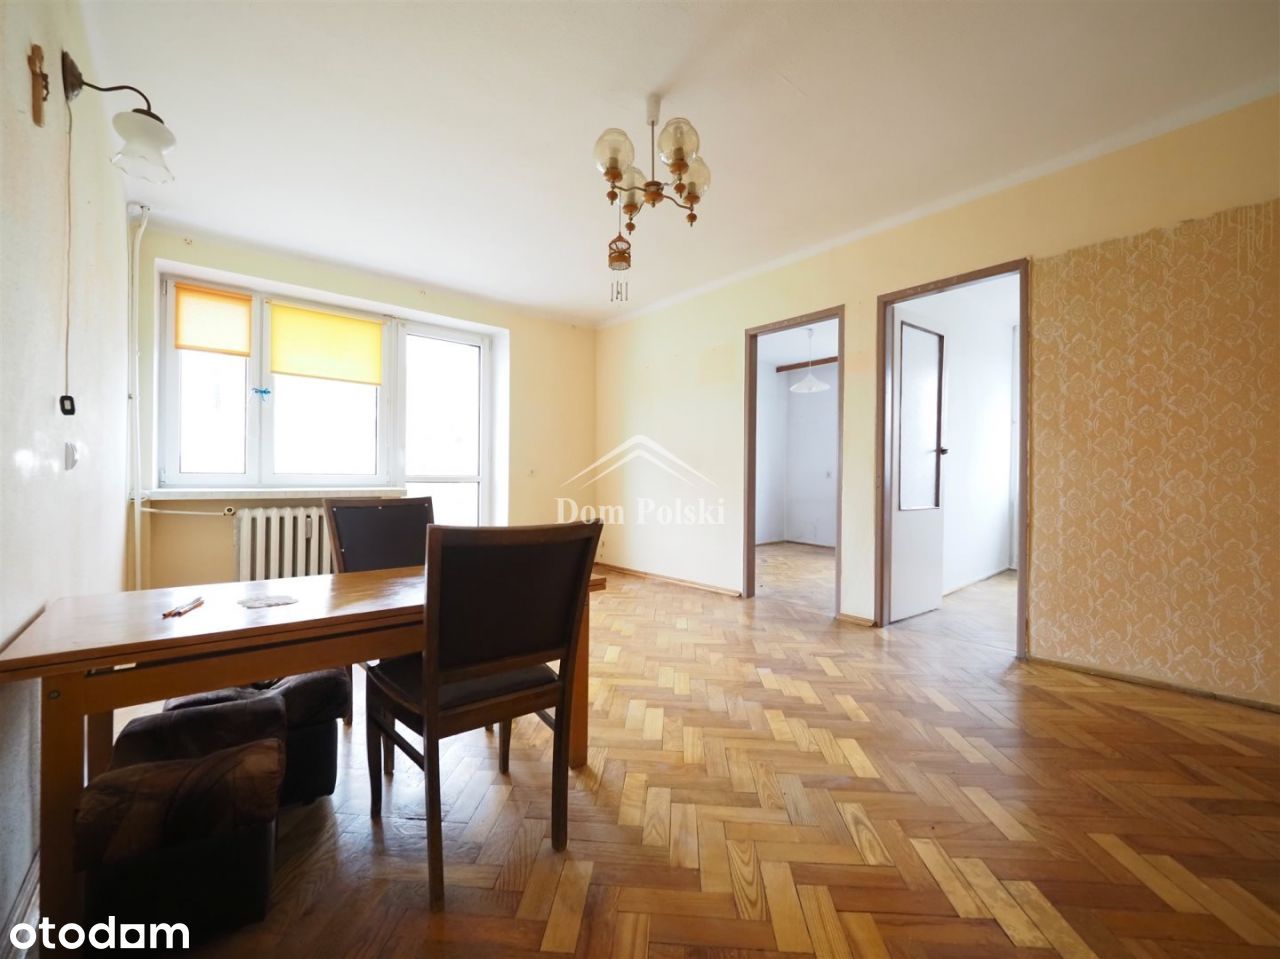 Mieszkanie 53,5 m2, 3 pokoje - Olecko, Kościuszki